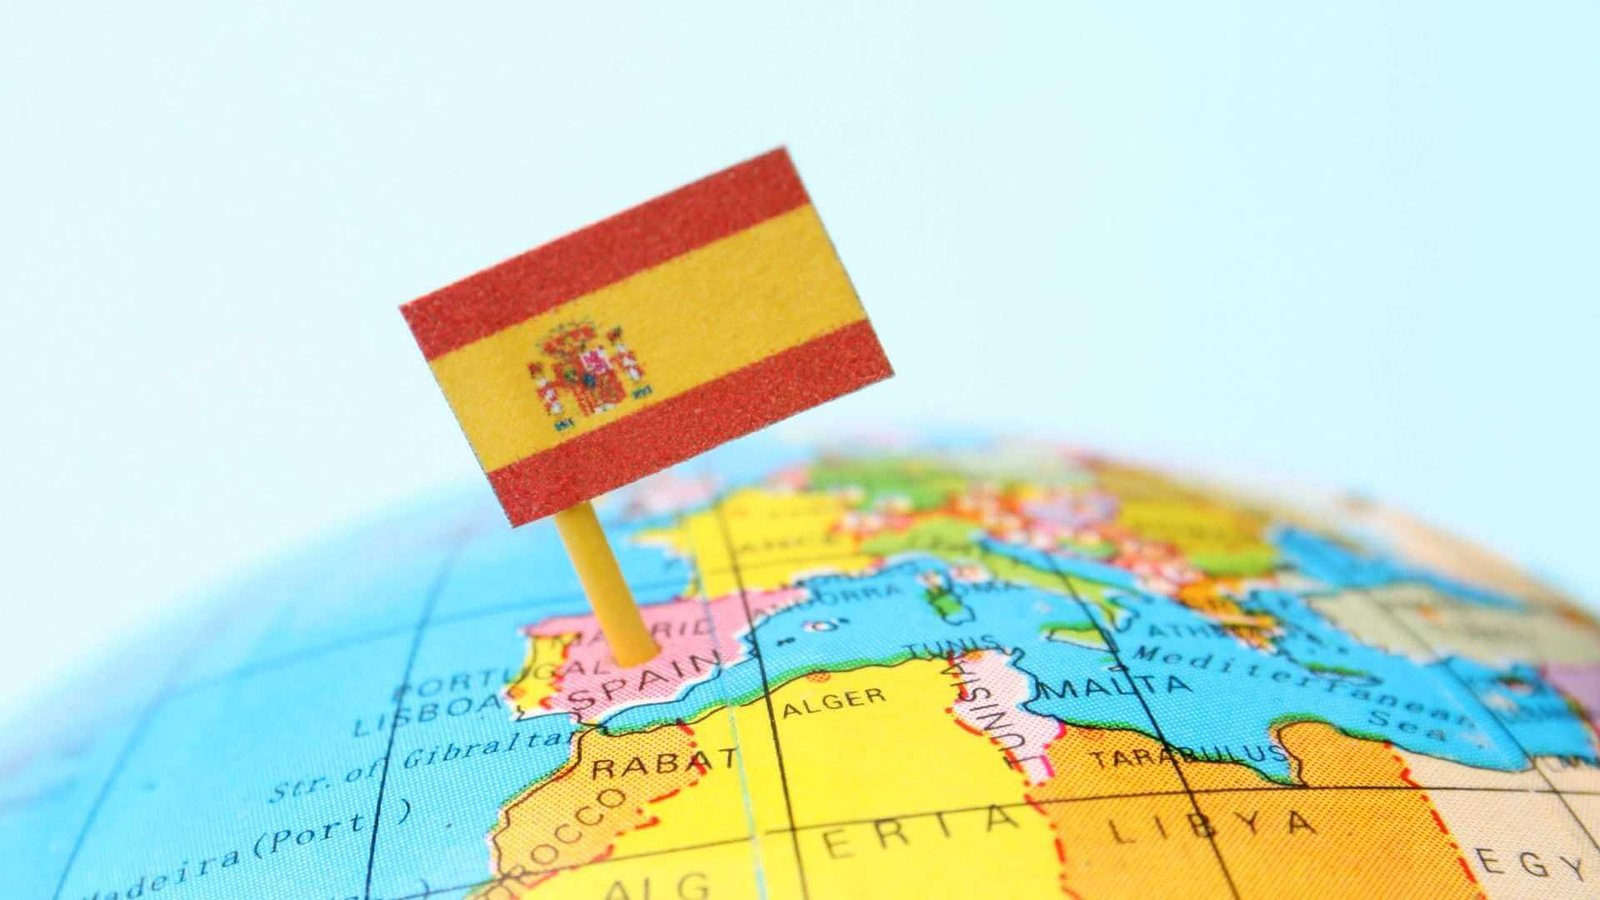 Expresiones españolas: imagen de mapa con la bandera española